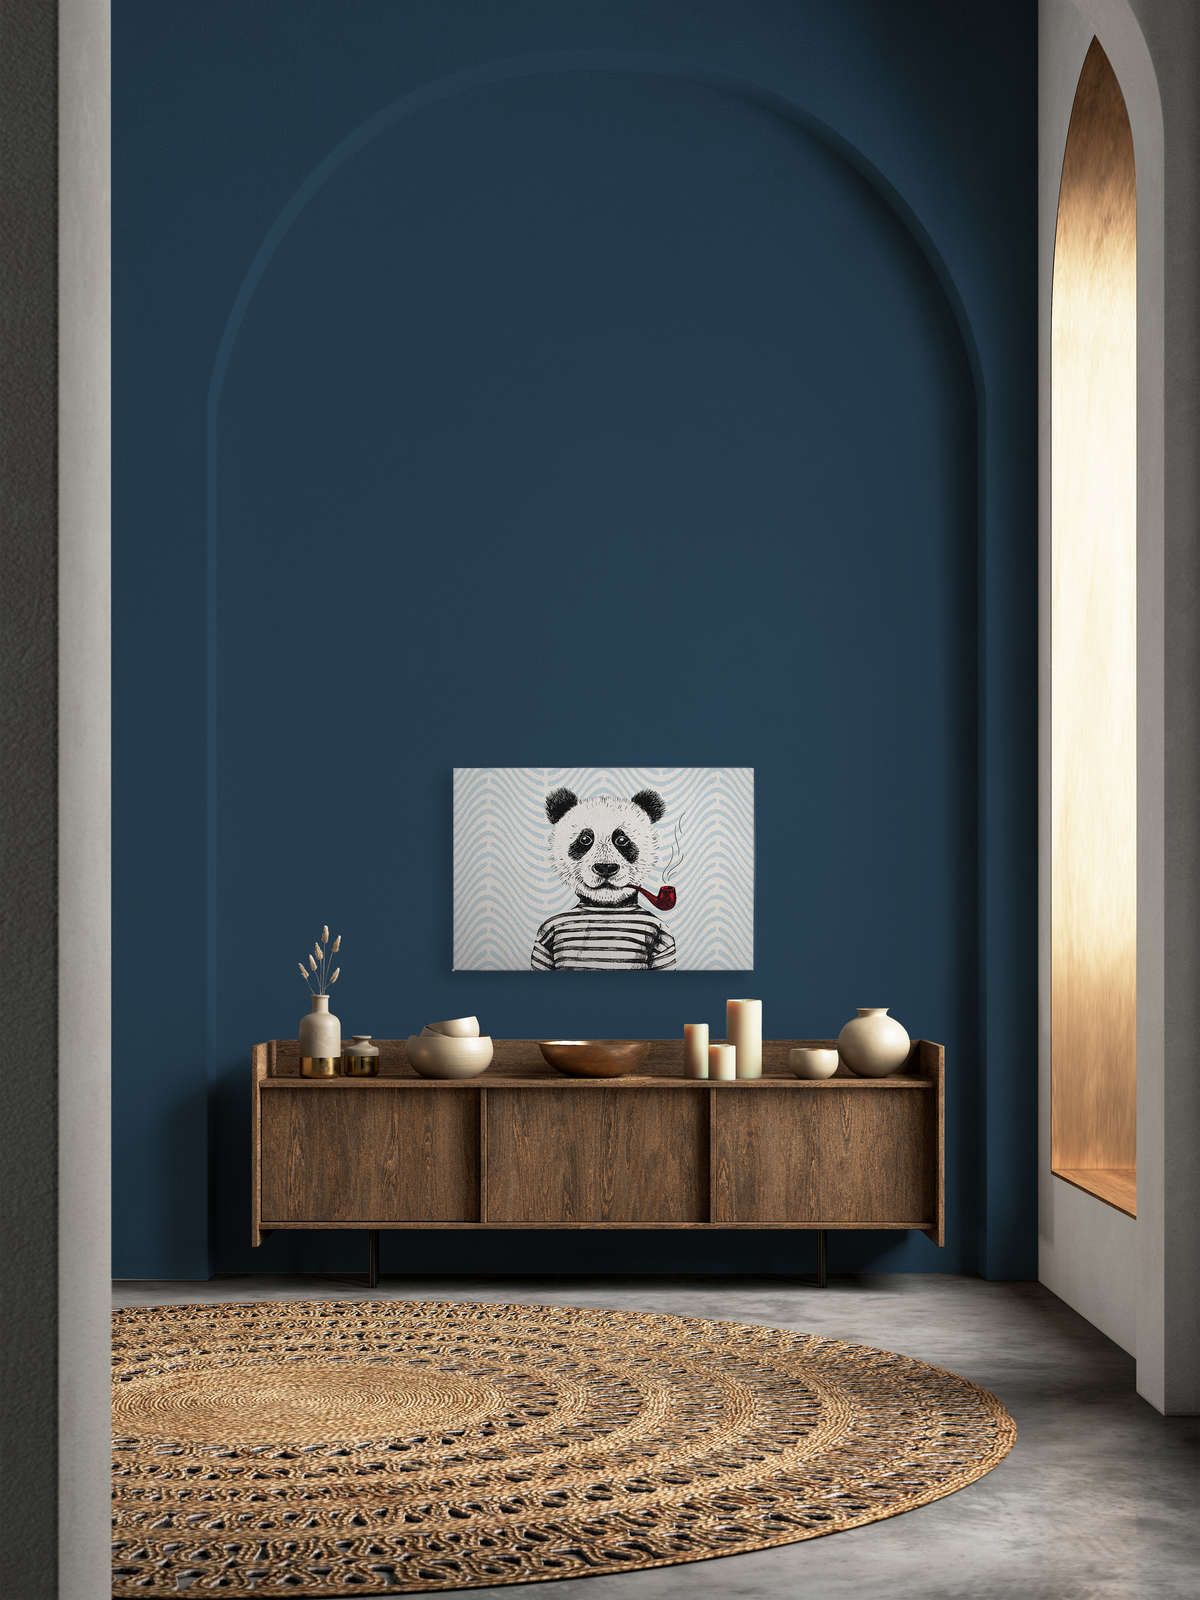             Tableau sur toile Style BD pour chambre d'enfant motif panda - 0,90 m x 0,60 m
        